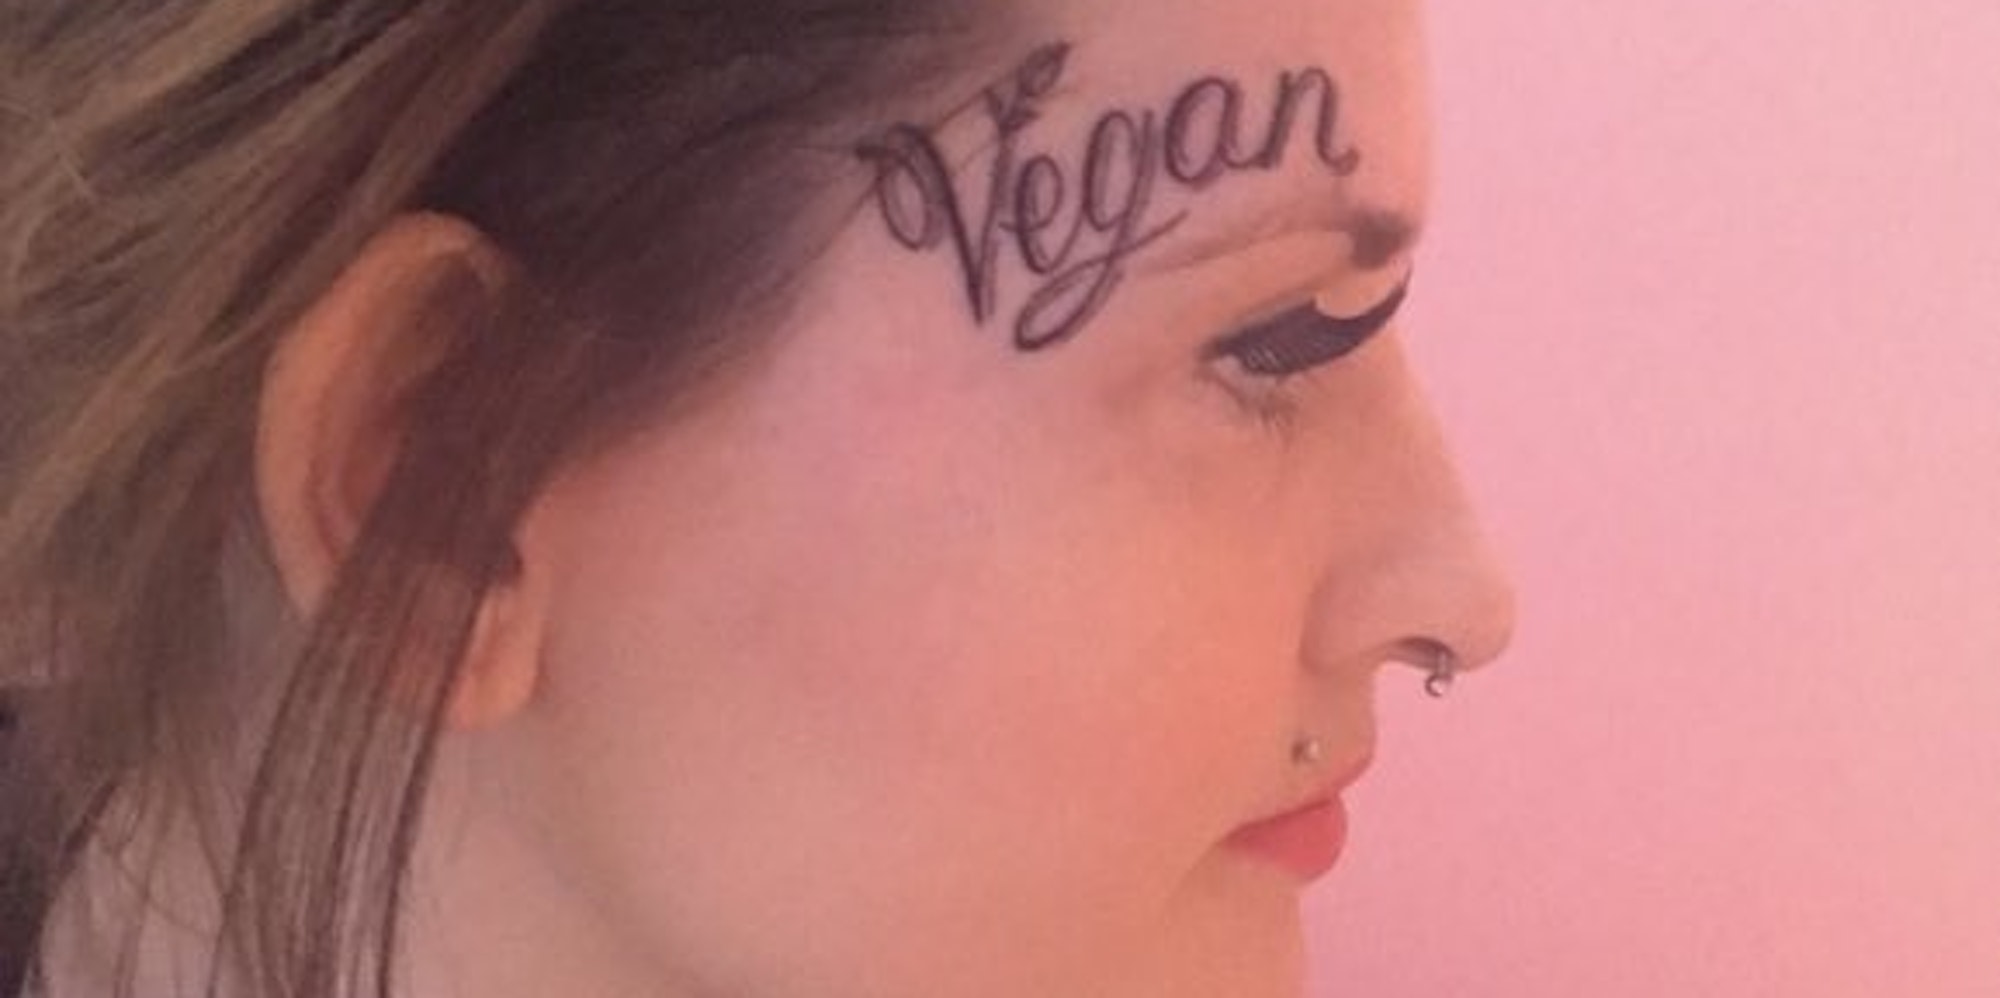 Vegan Tattoo